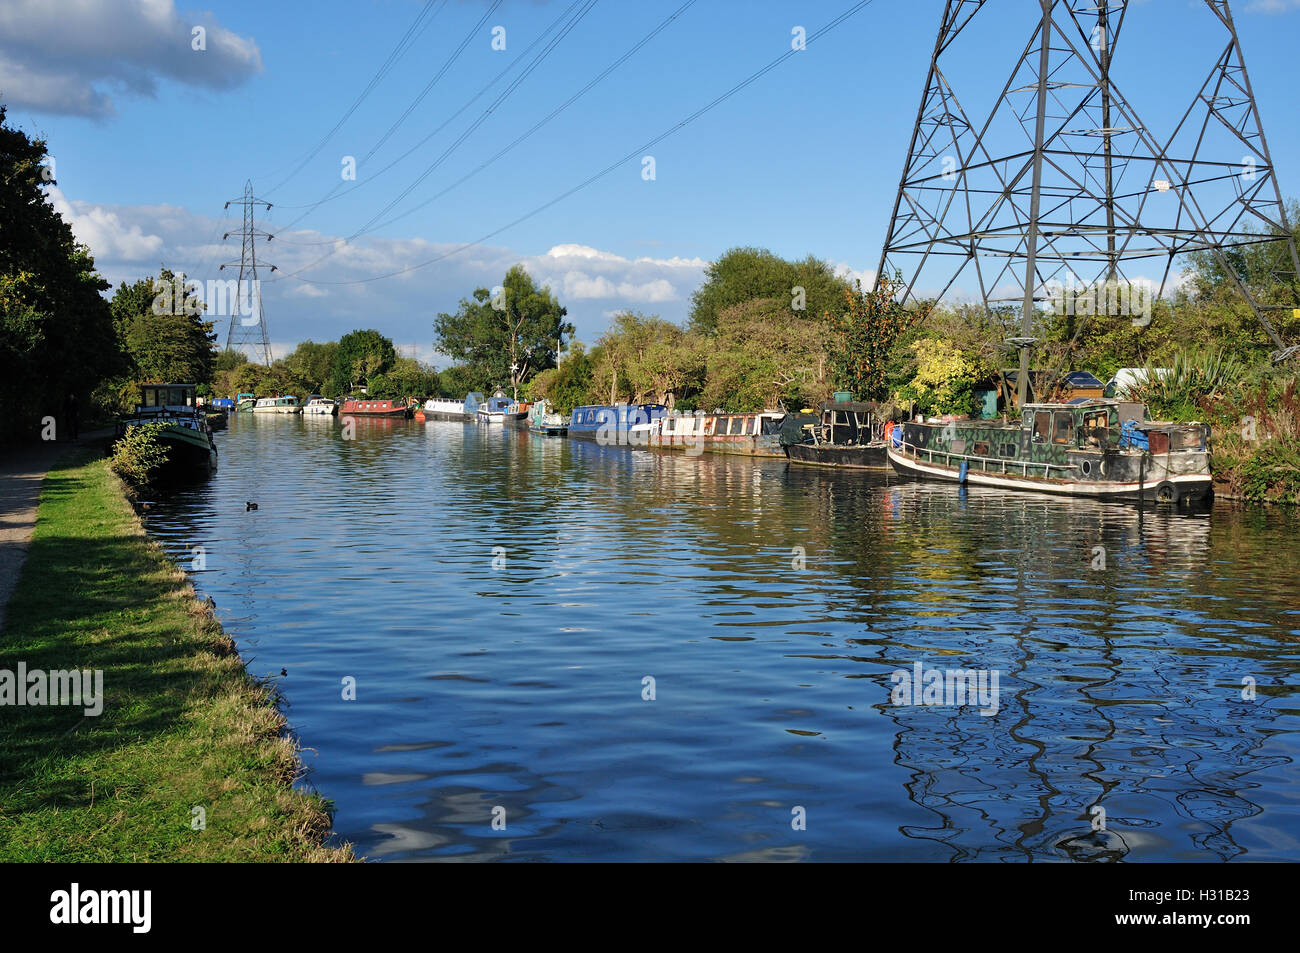 La rivière Lea, près de Tottenham, dans le nord de Londres, avec des bateaux étroits et des pylônes, en été Banque D'Images